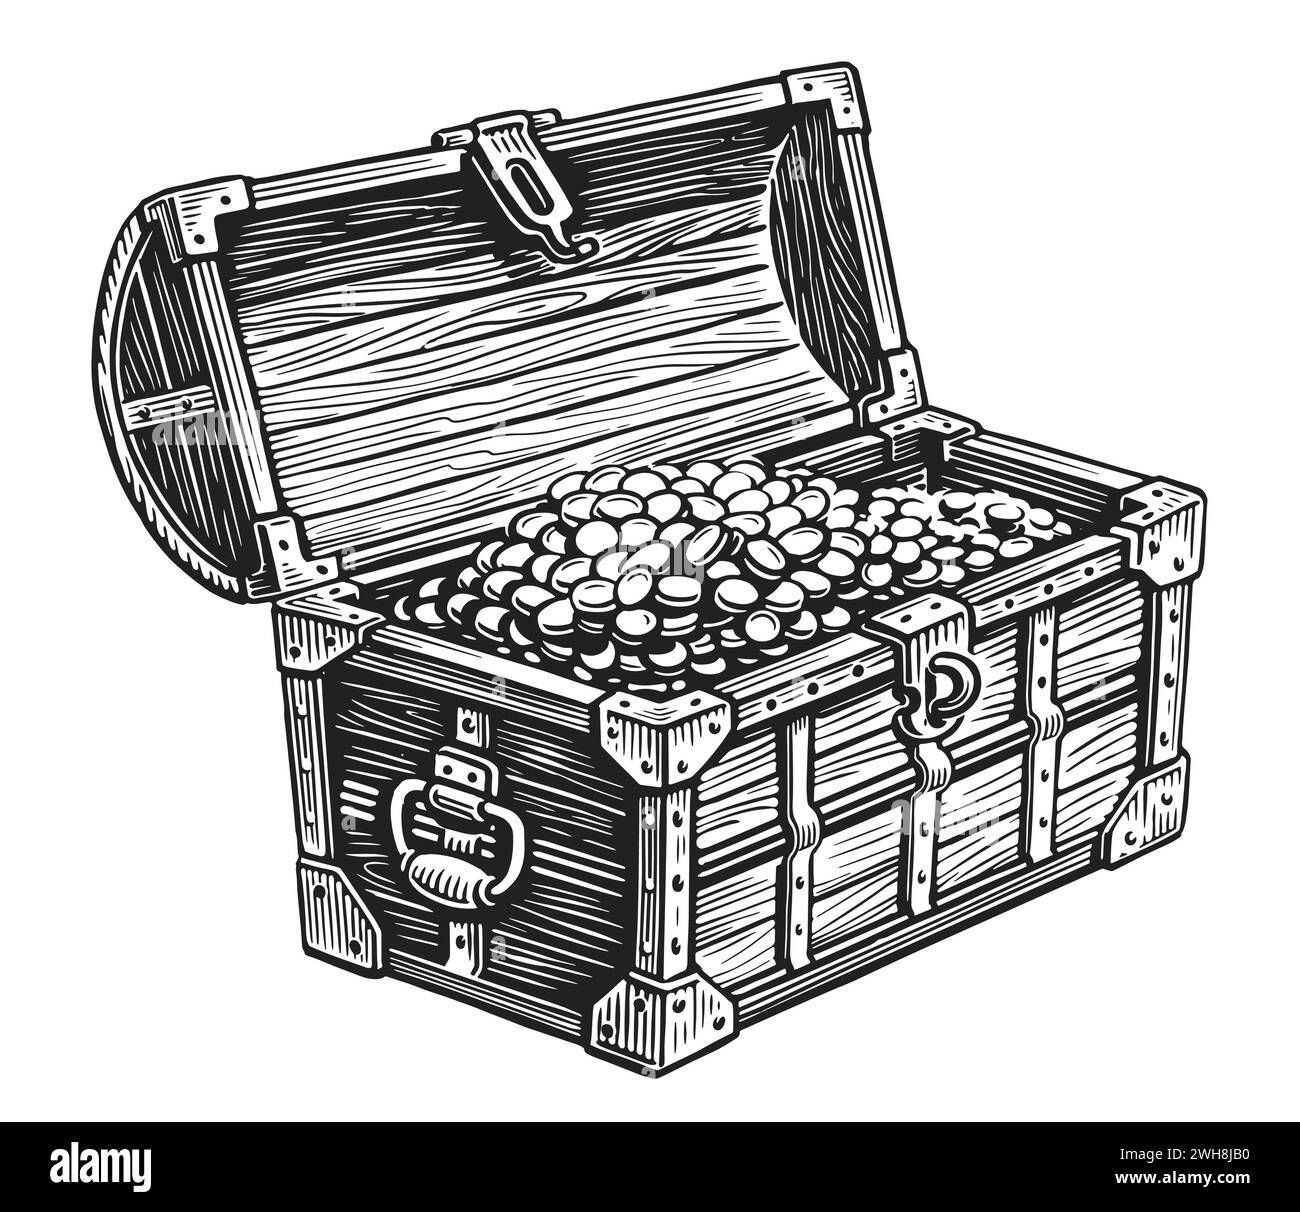 Cassa pirata in legno piena di tesori di monete d'oro. Illustrazione del vettore di schizzo disegnato a mano Illustrazione Vettoriale